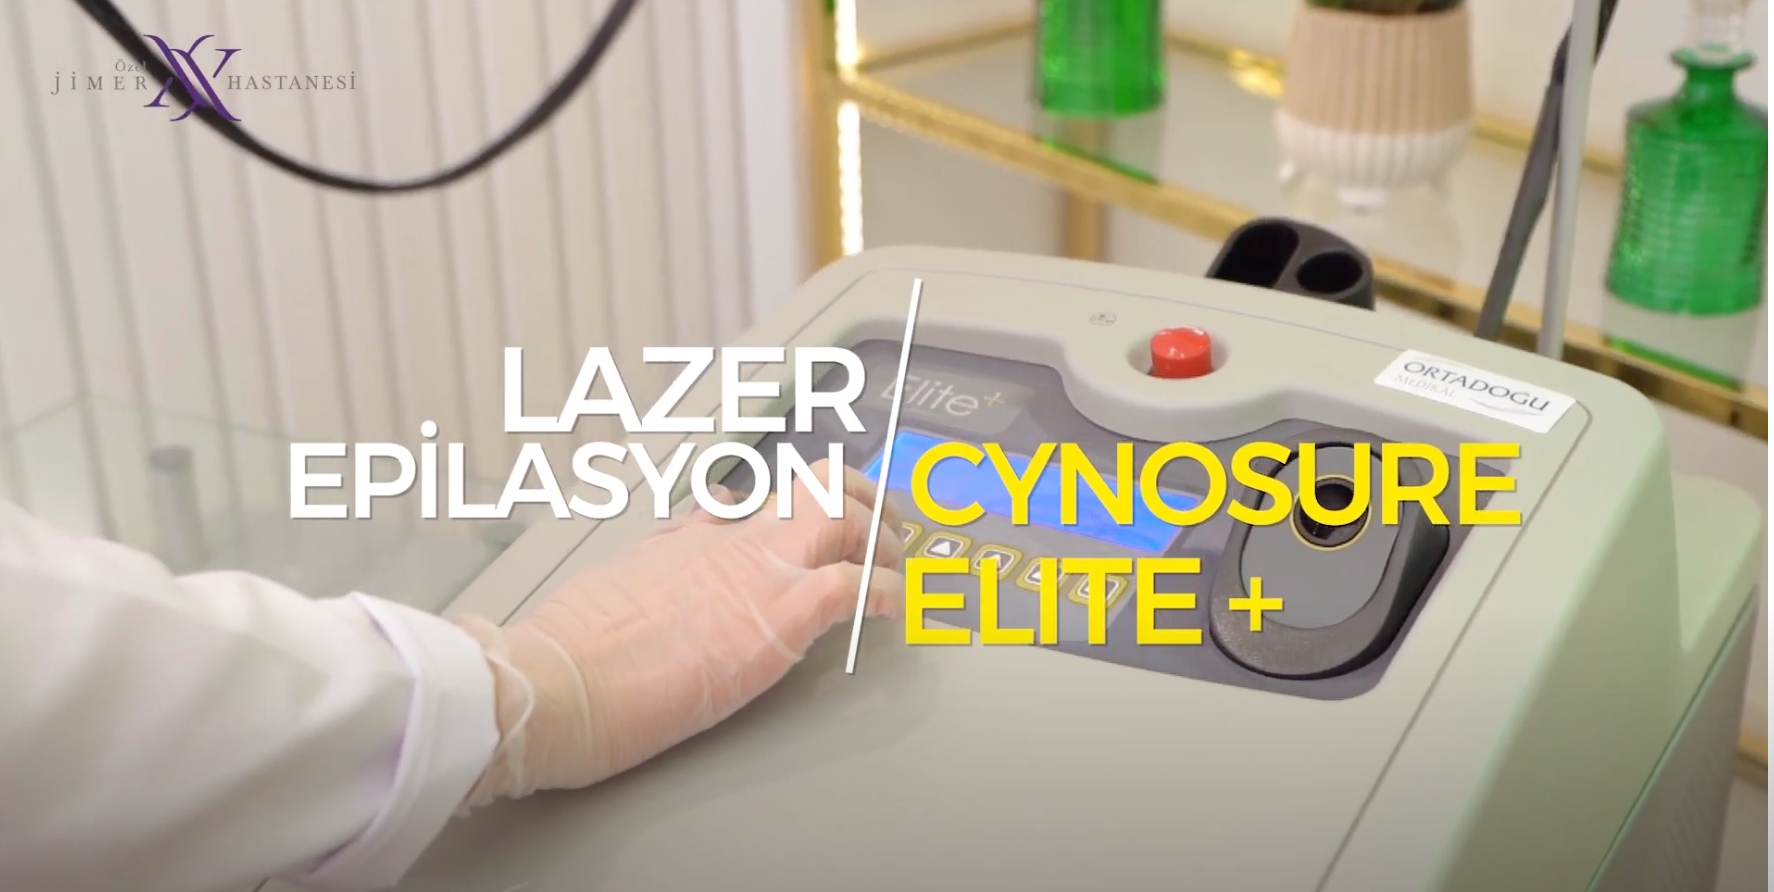 Cynosure Elite Plus Lazer Epilasyon ( Alexandrite ve Nd:YAG ) - Bursa Lazer Epilasyon